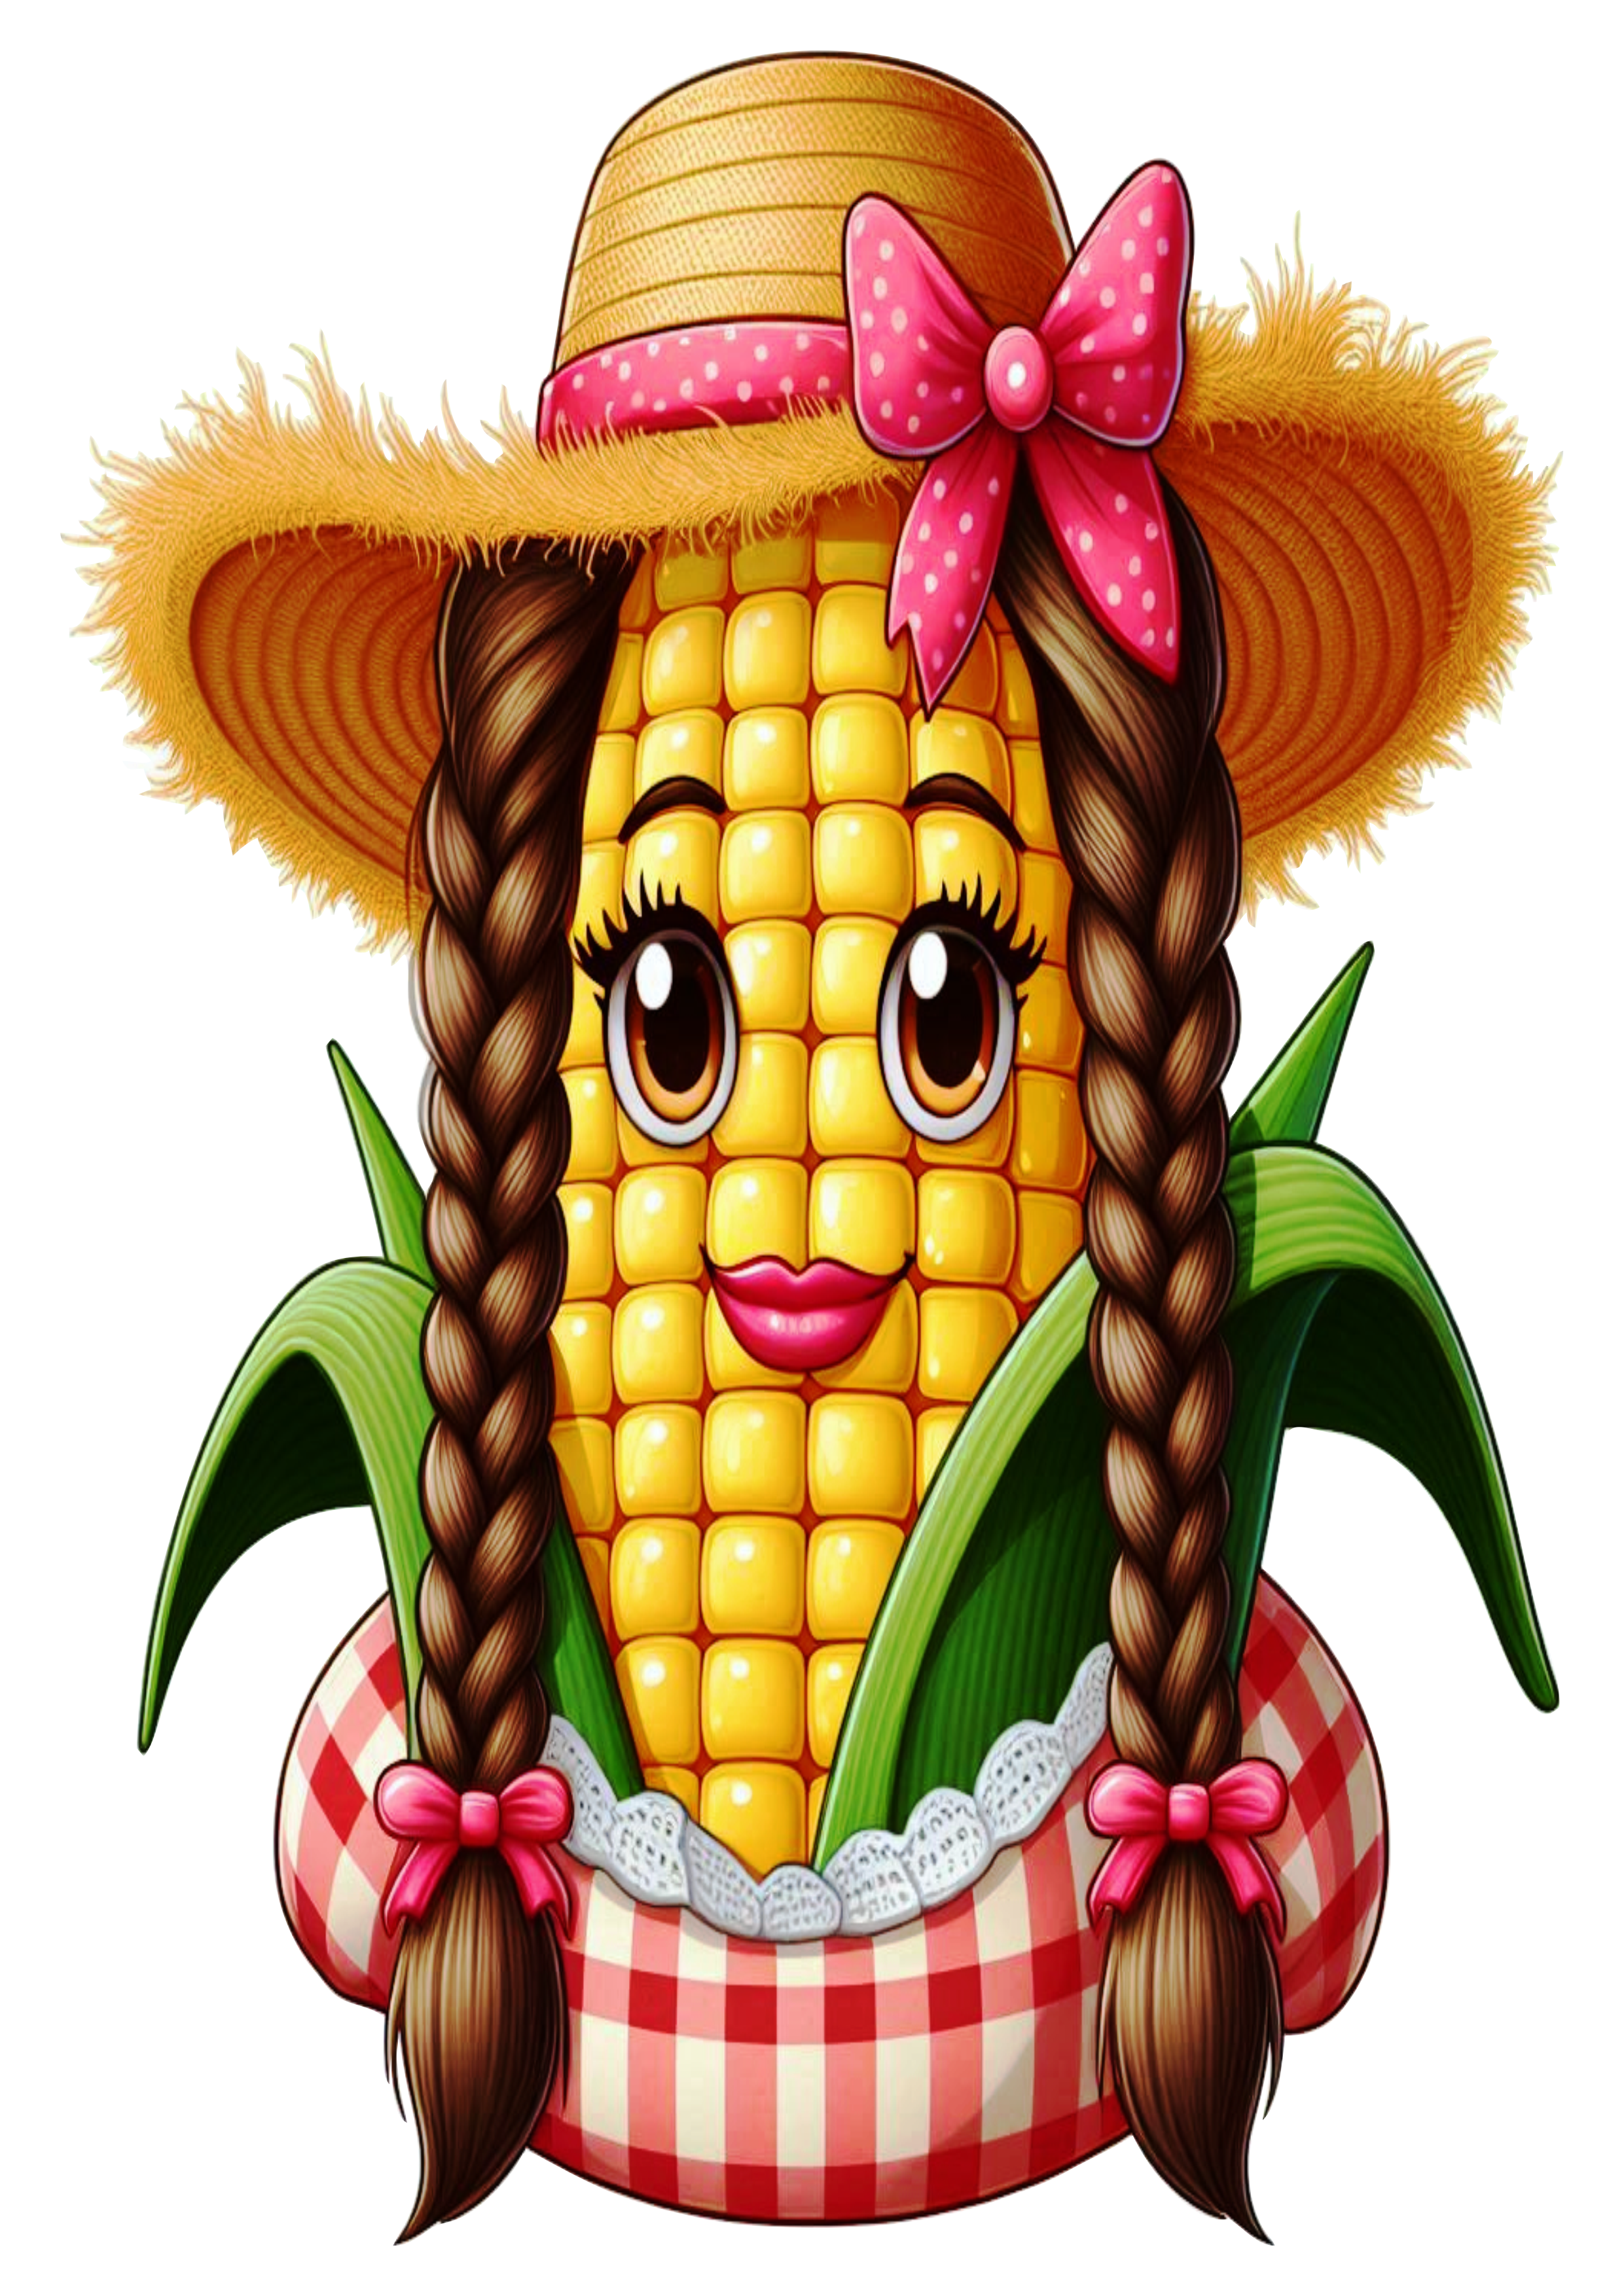 Imagens engraçadas para São João espiga de milho com chapéu de palha e trancinhas png fundo transparente clipart vetor